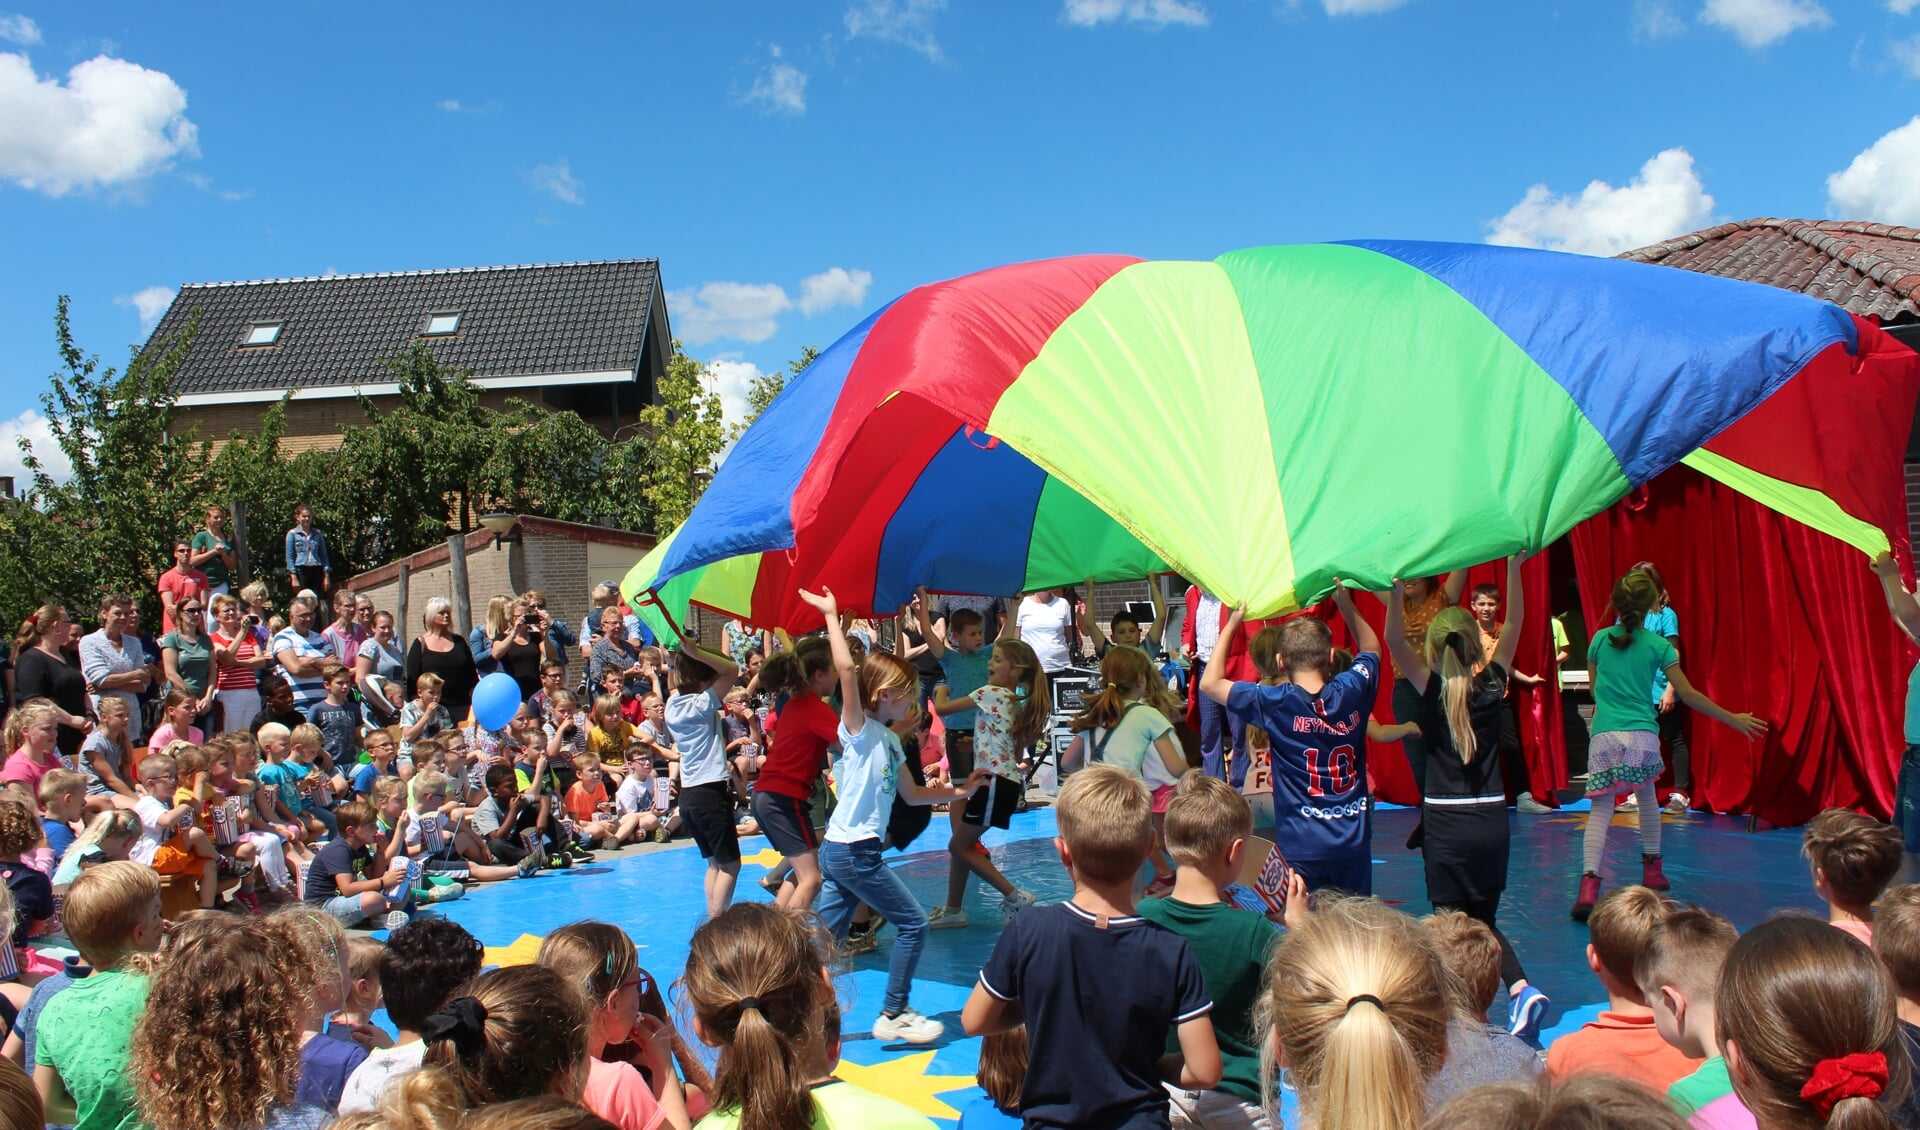 Basisschoolleerlingen lieten een spectaculaire dansact met doek zien op de circusmiddag van De Zonneberg in Kruisland